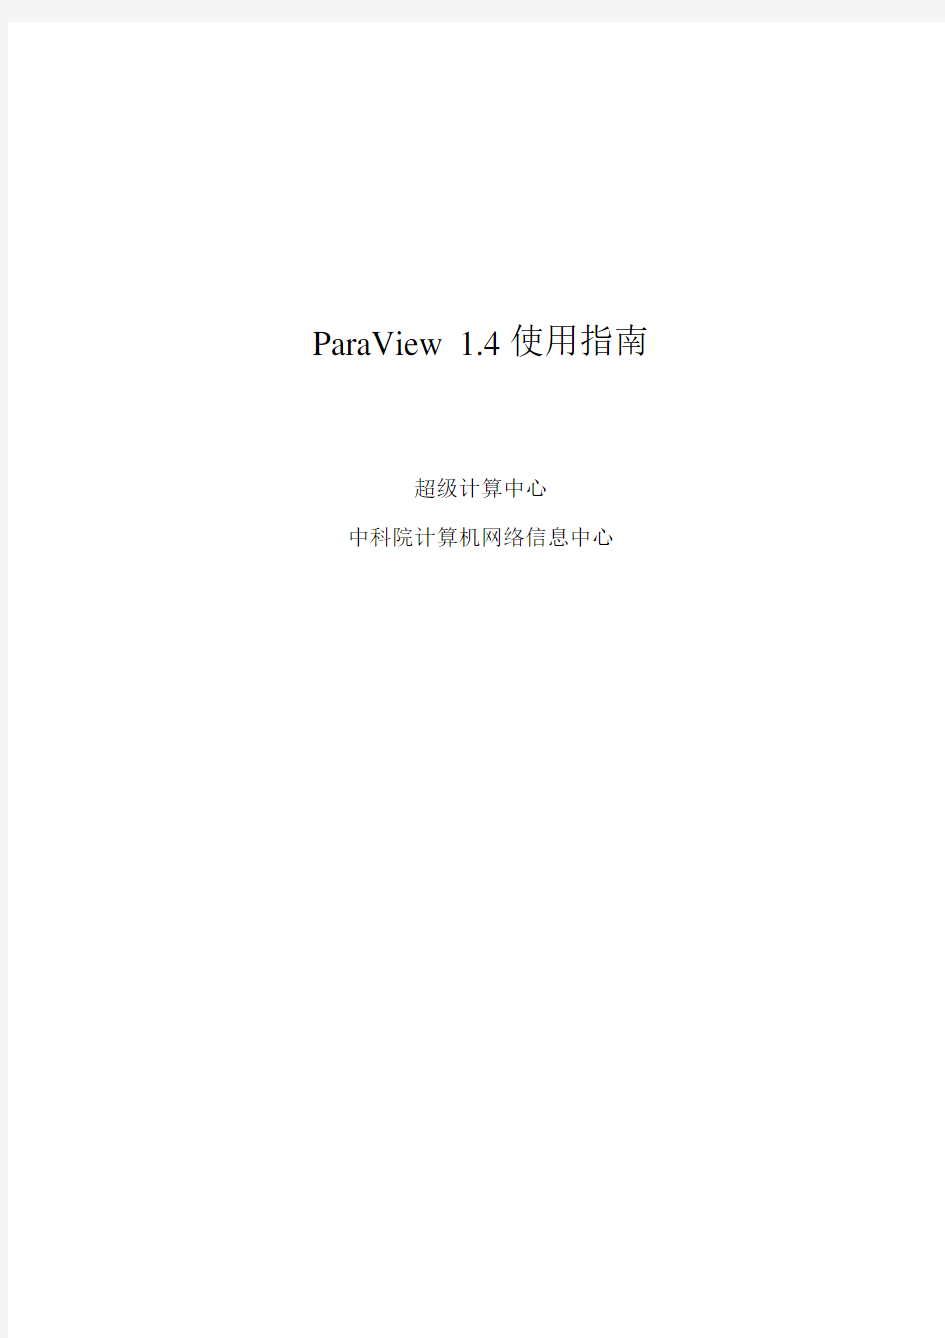 ParaView使用指南 - ParaView 1.4 使用指南